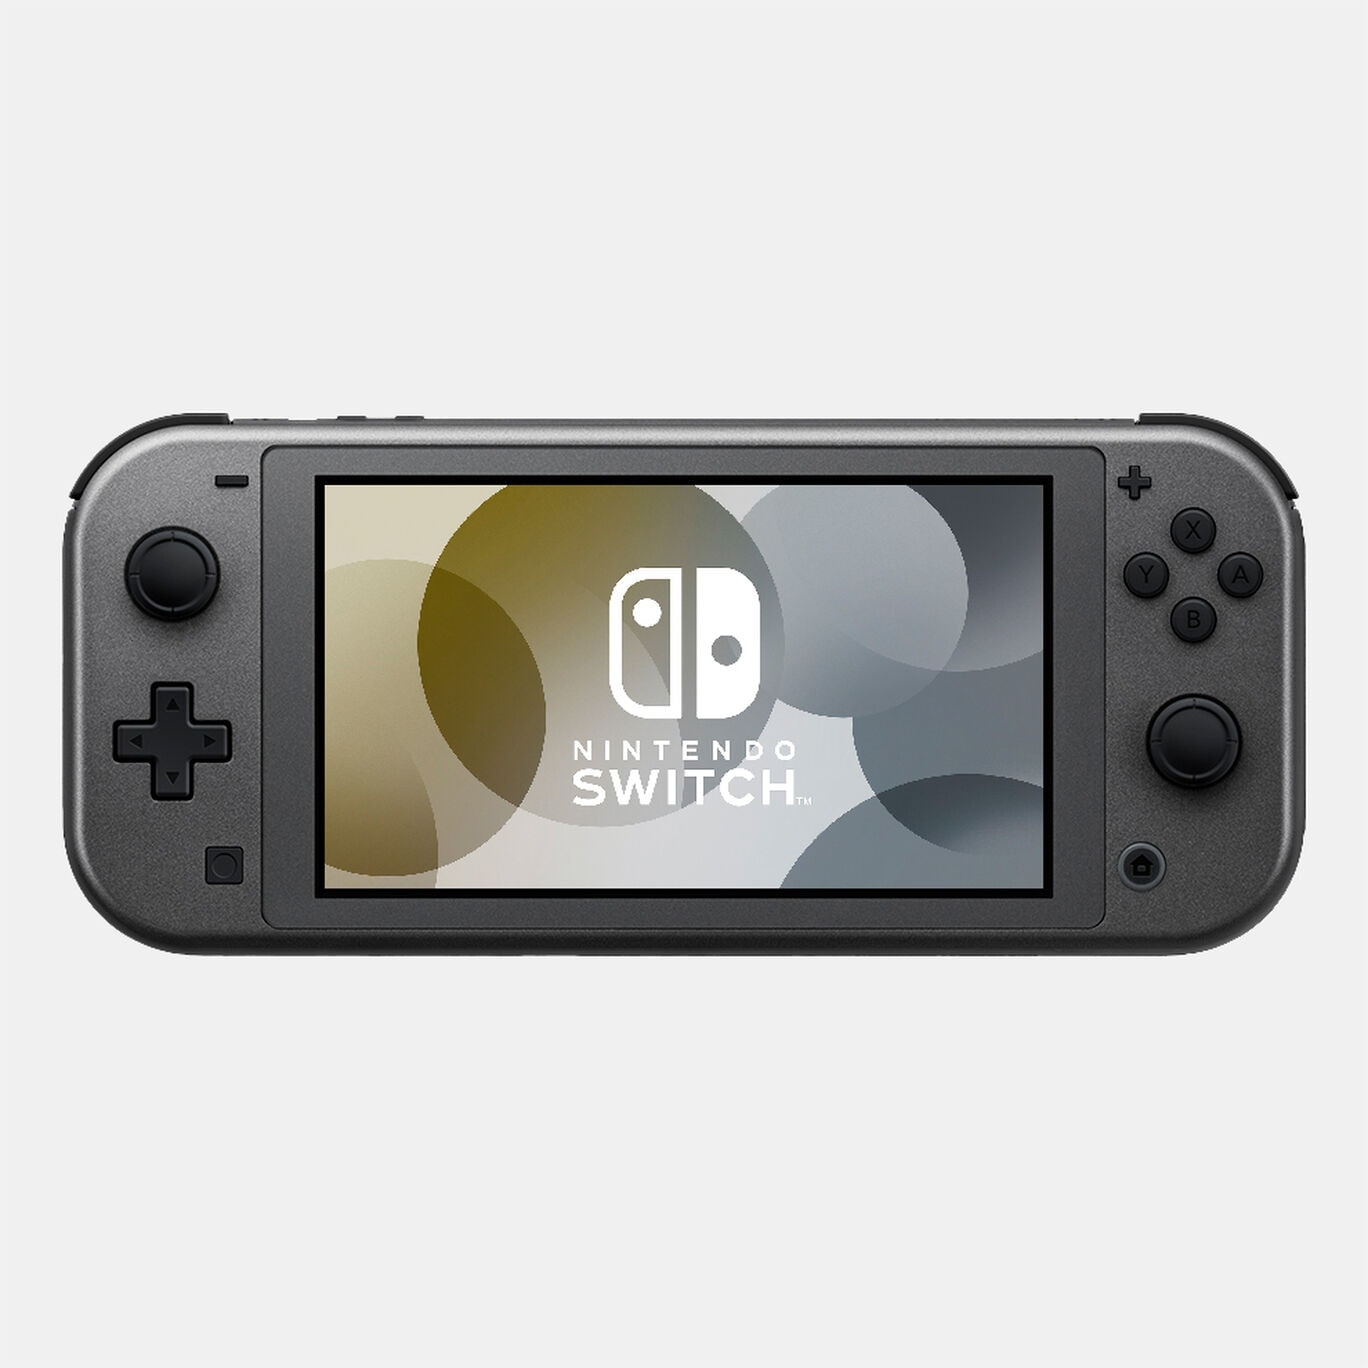 【新品未開封】Nintendo Switch Lite ディアルガ・パルキア